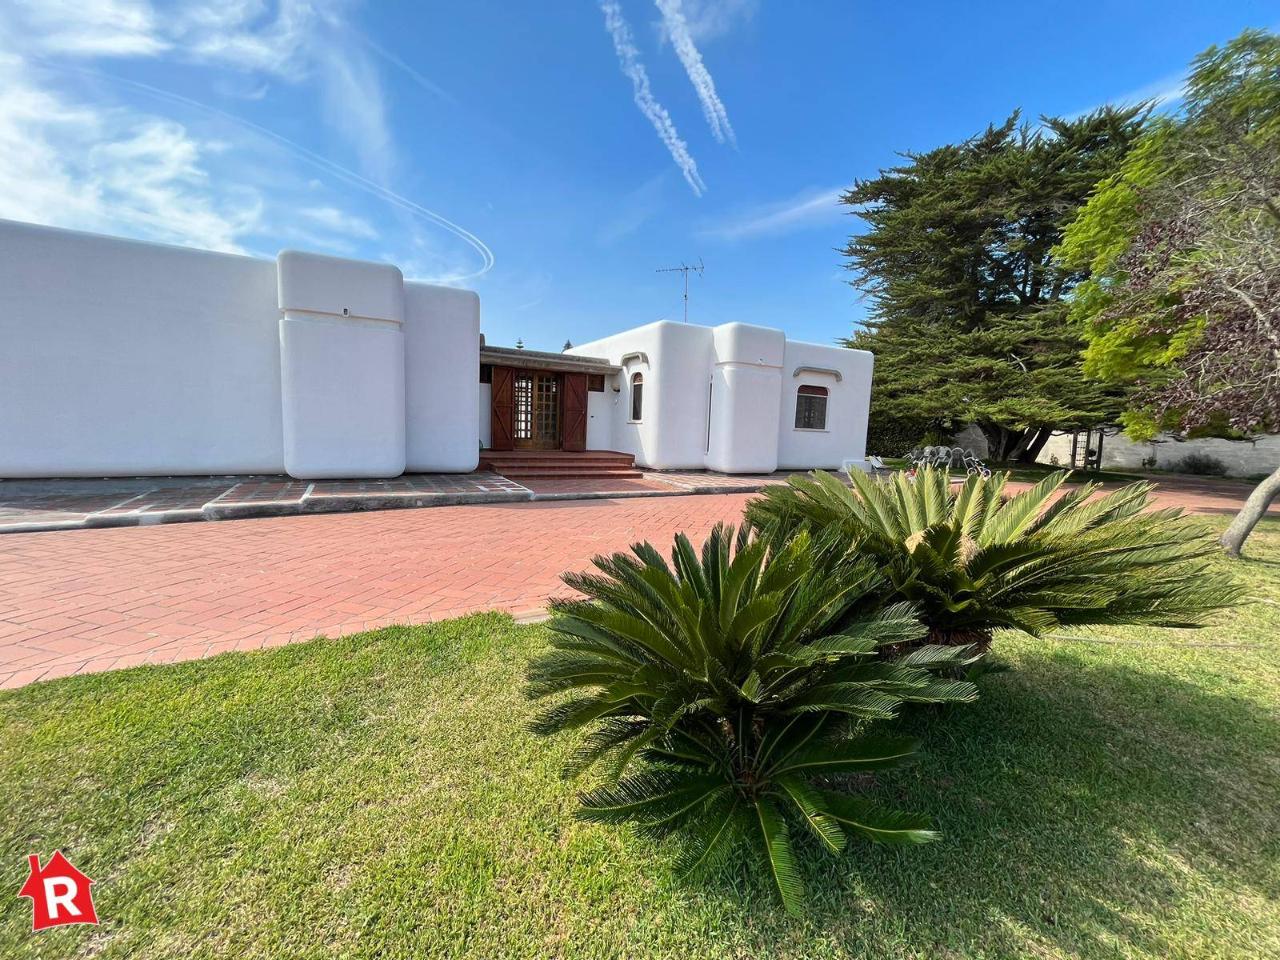 Villa in vendita a Lecce